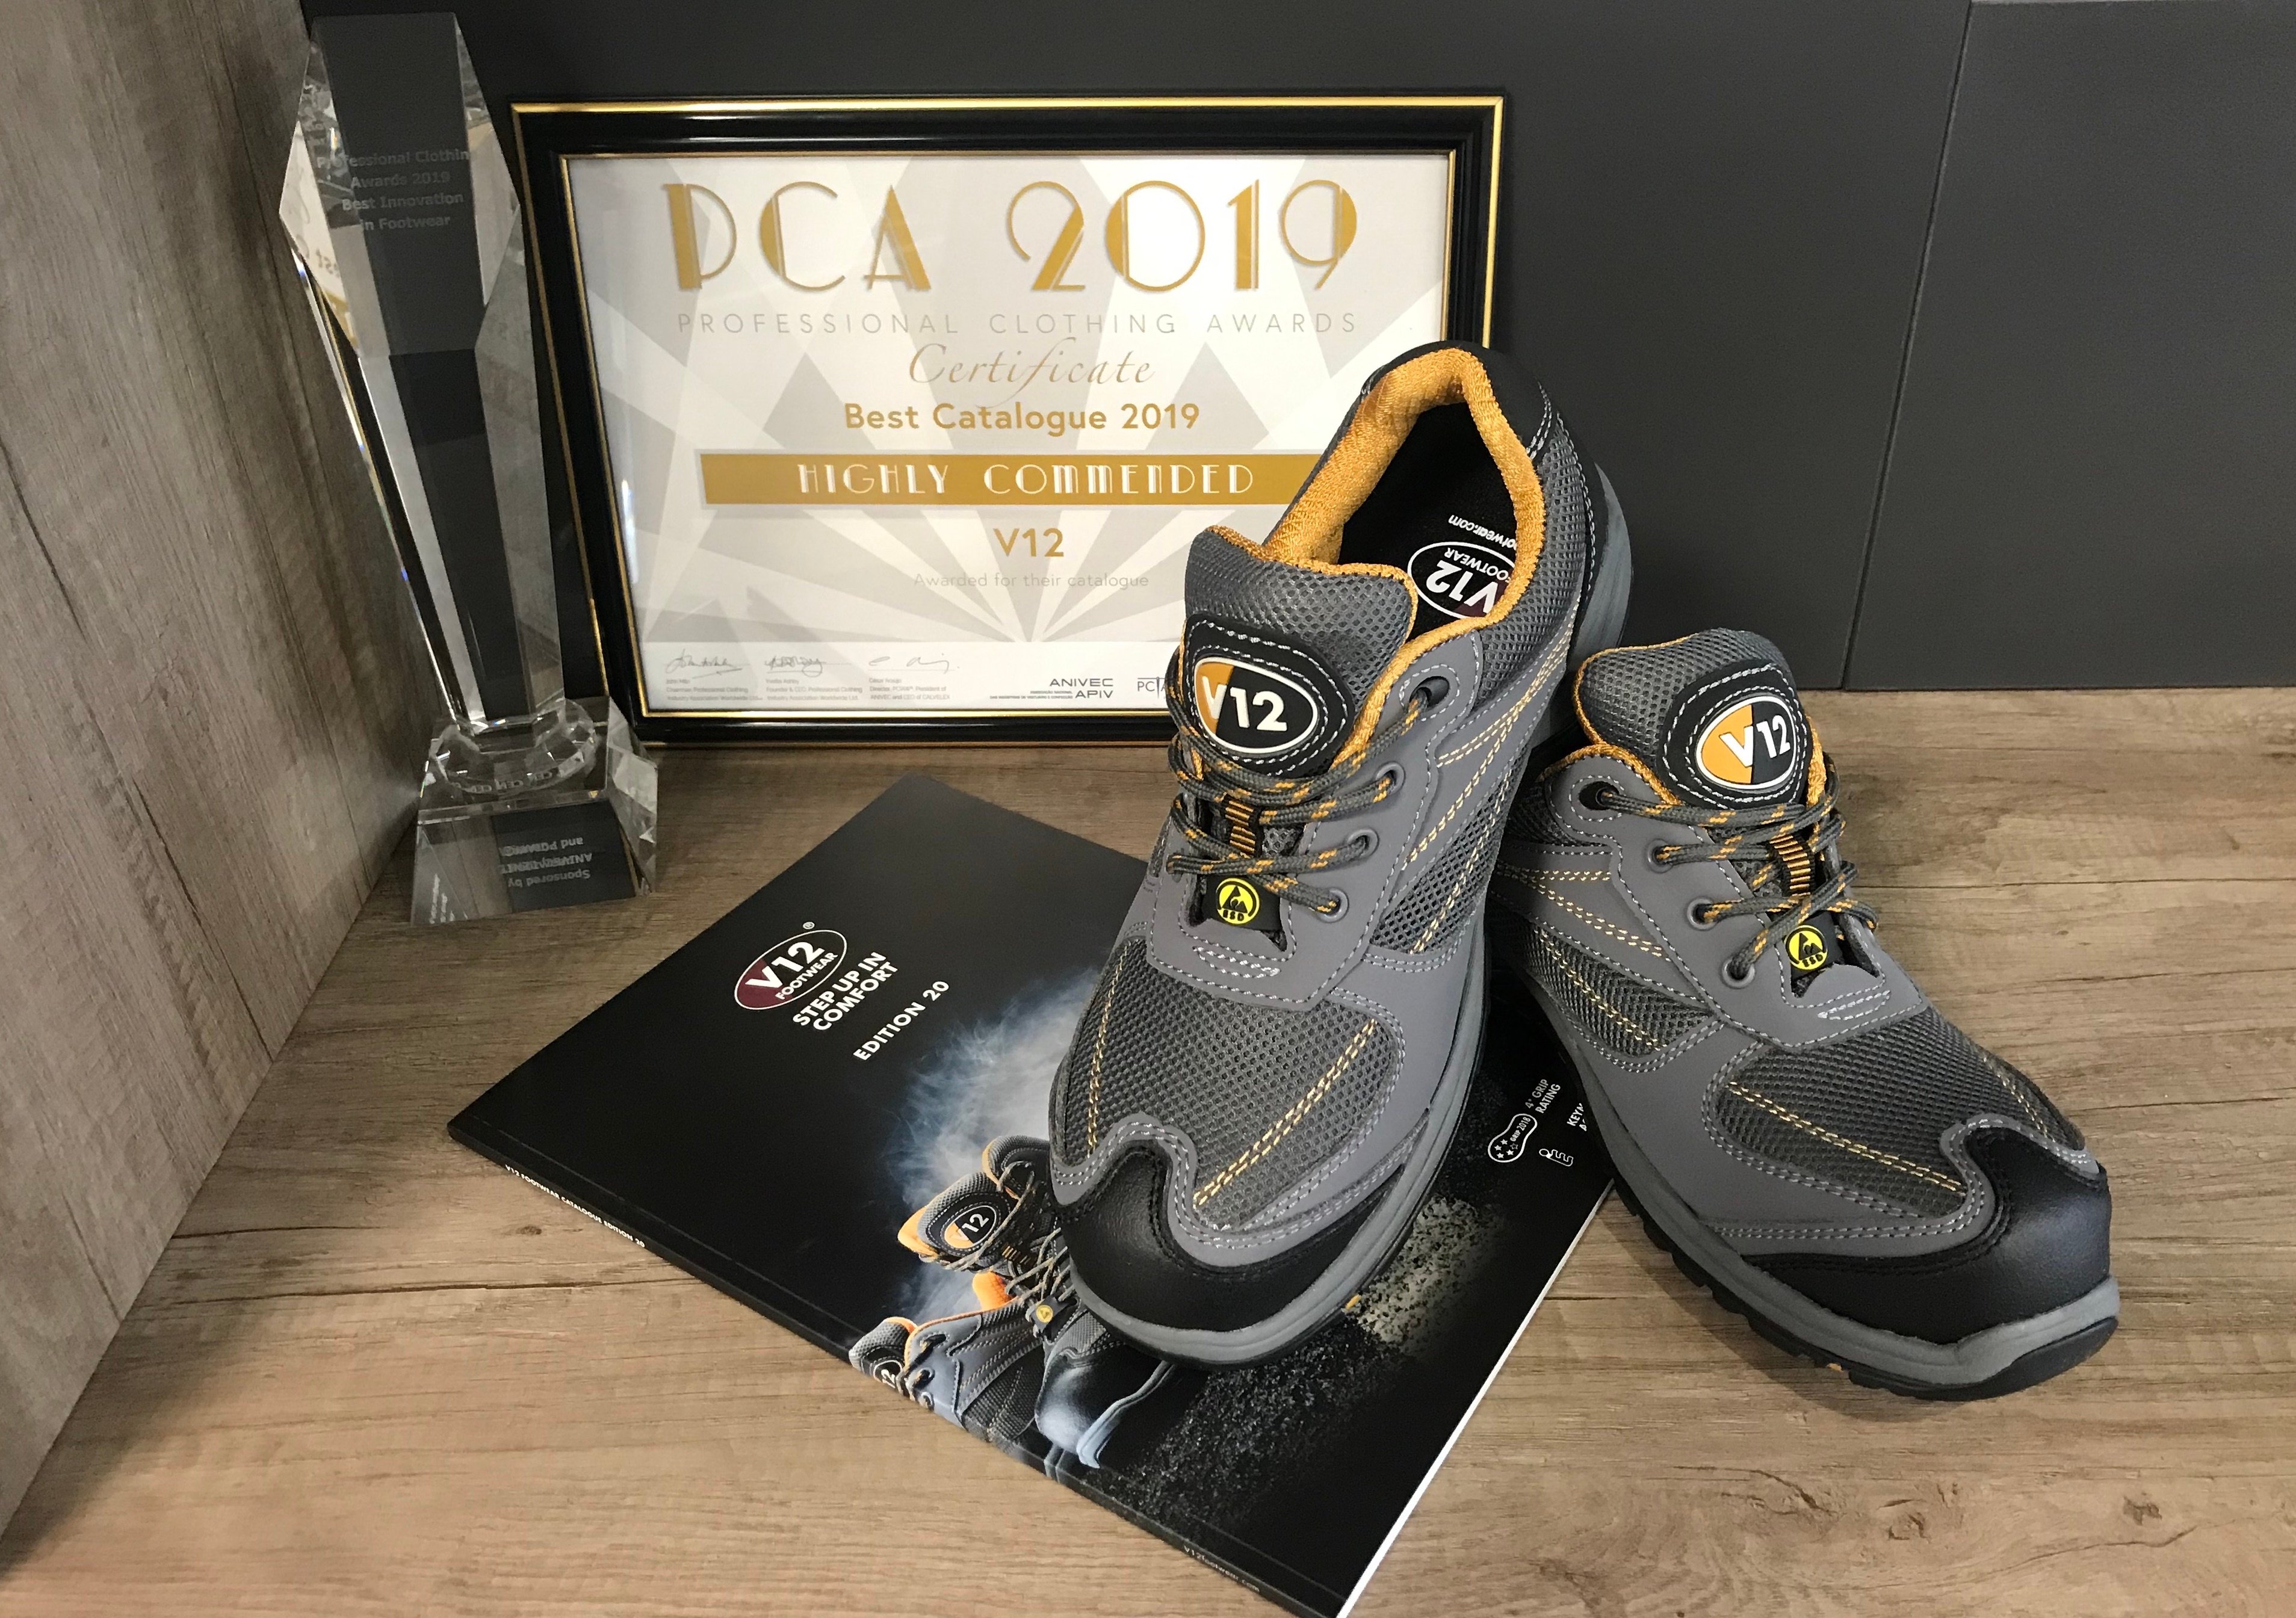 V12 Footwear - at the PCIAW Awards 2019